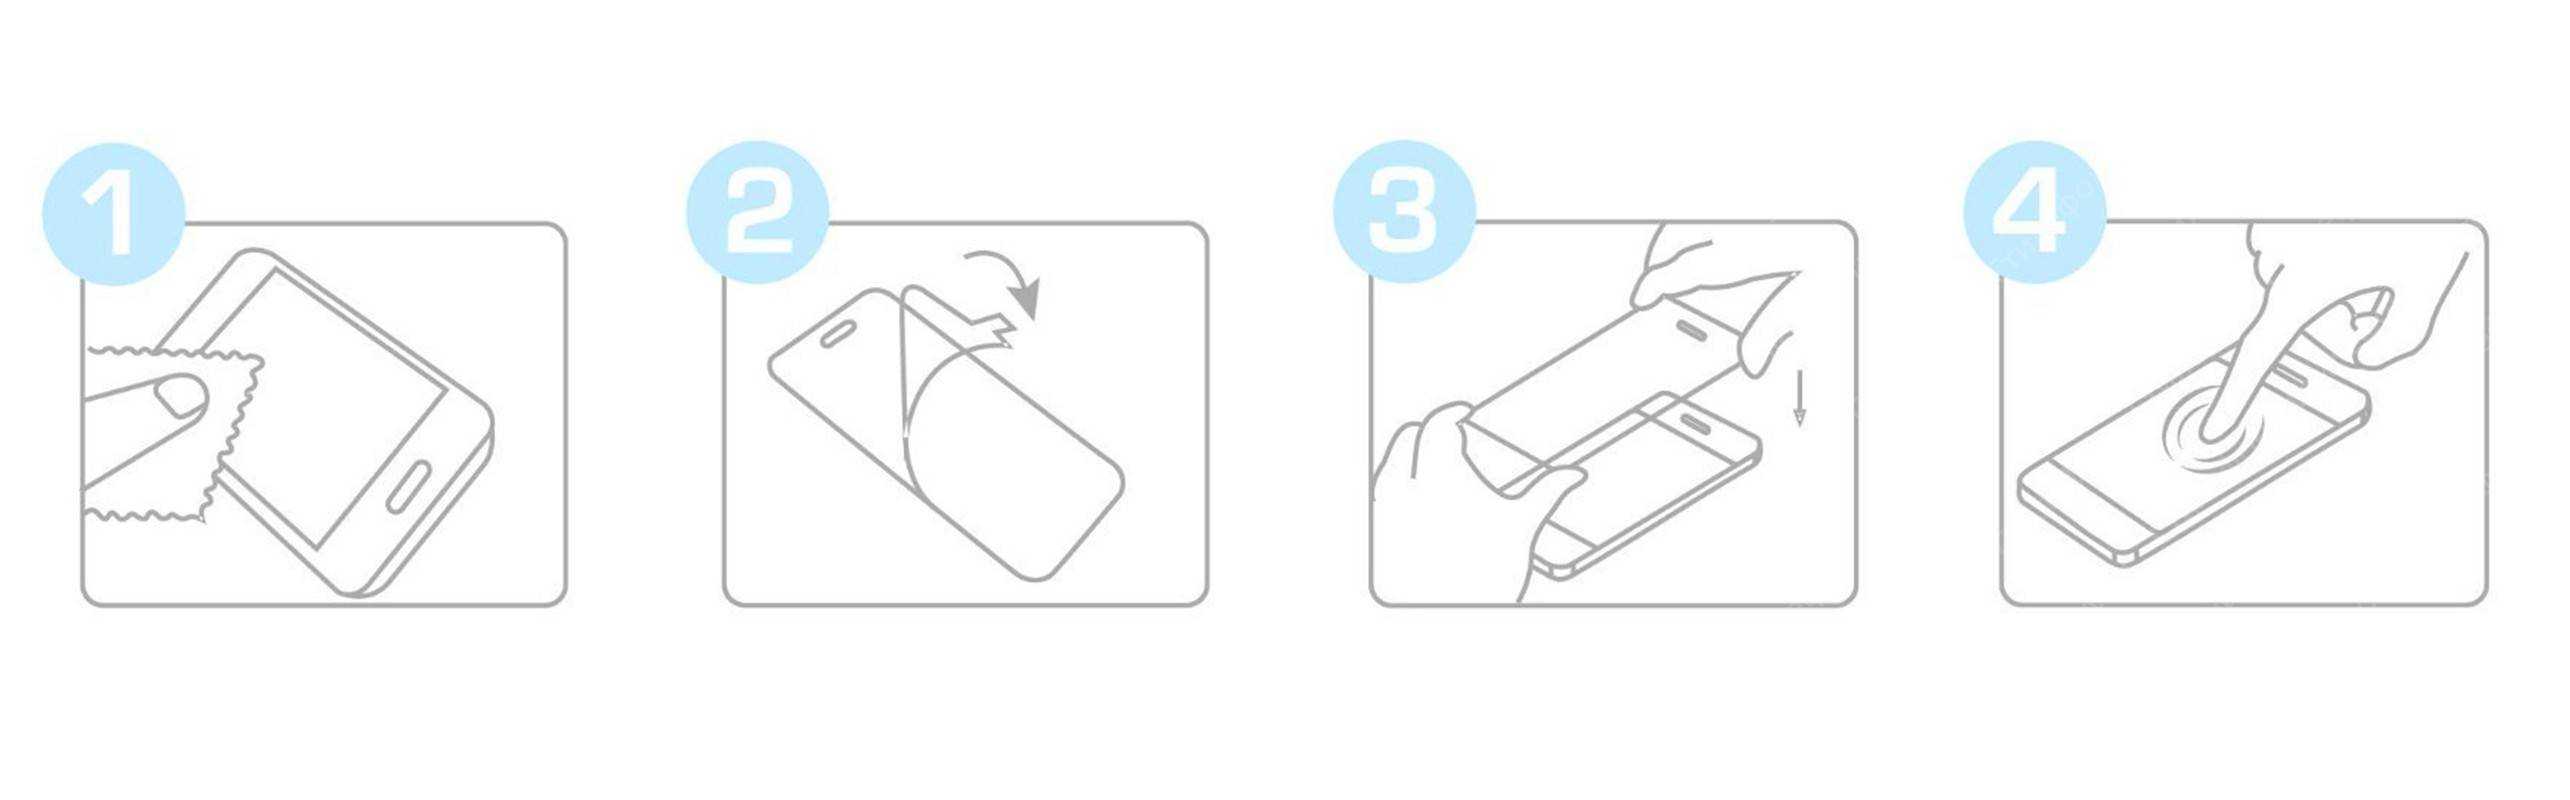 Как снять защитное стекло с телефона: 6 простых способов